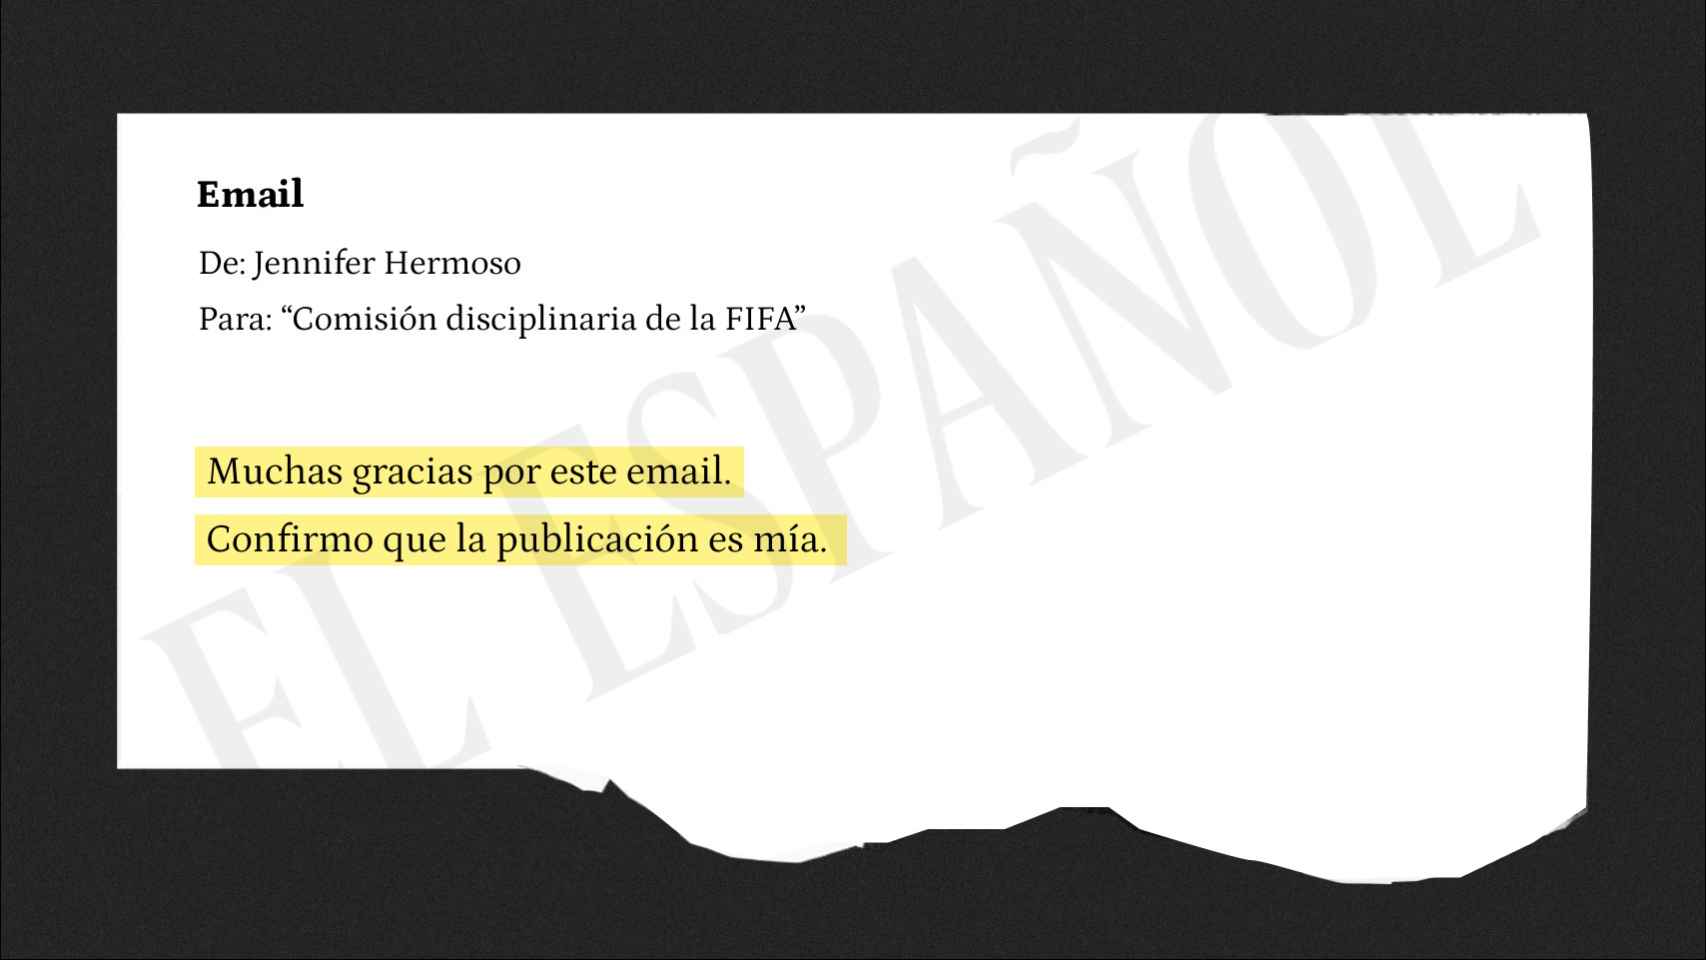 Email de Jennifer Hermoso a la Comisión Disciplinaria de la FIFA